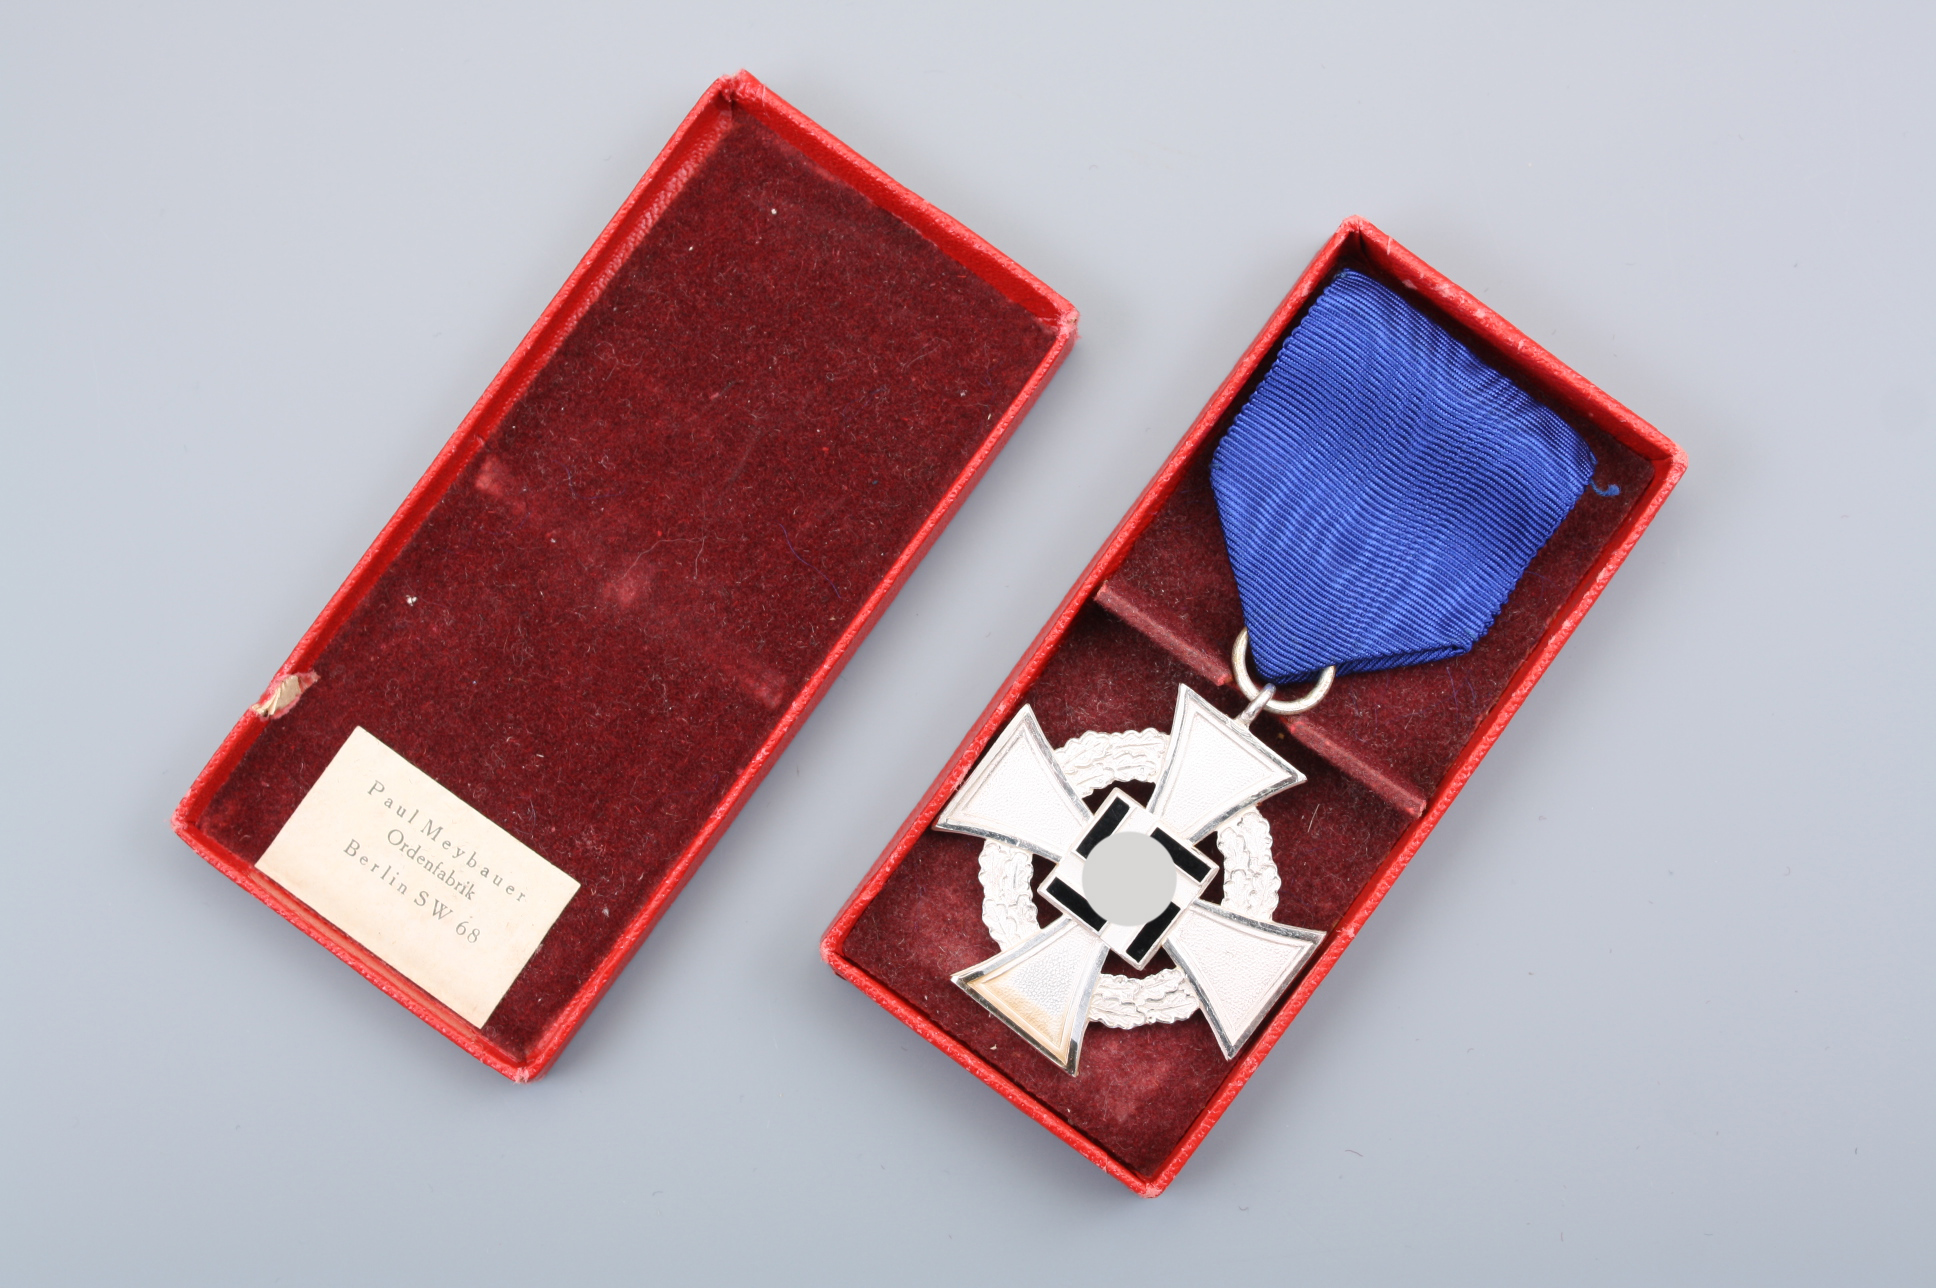 Серебряный немецкий крест "25 лет выслуги на гражданской службе" в оригинальном футляре, Германия.